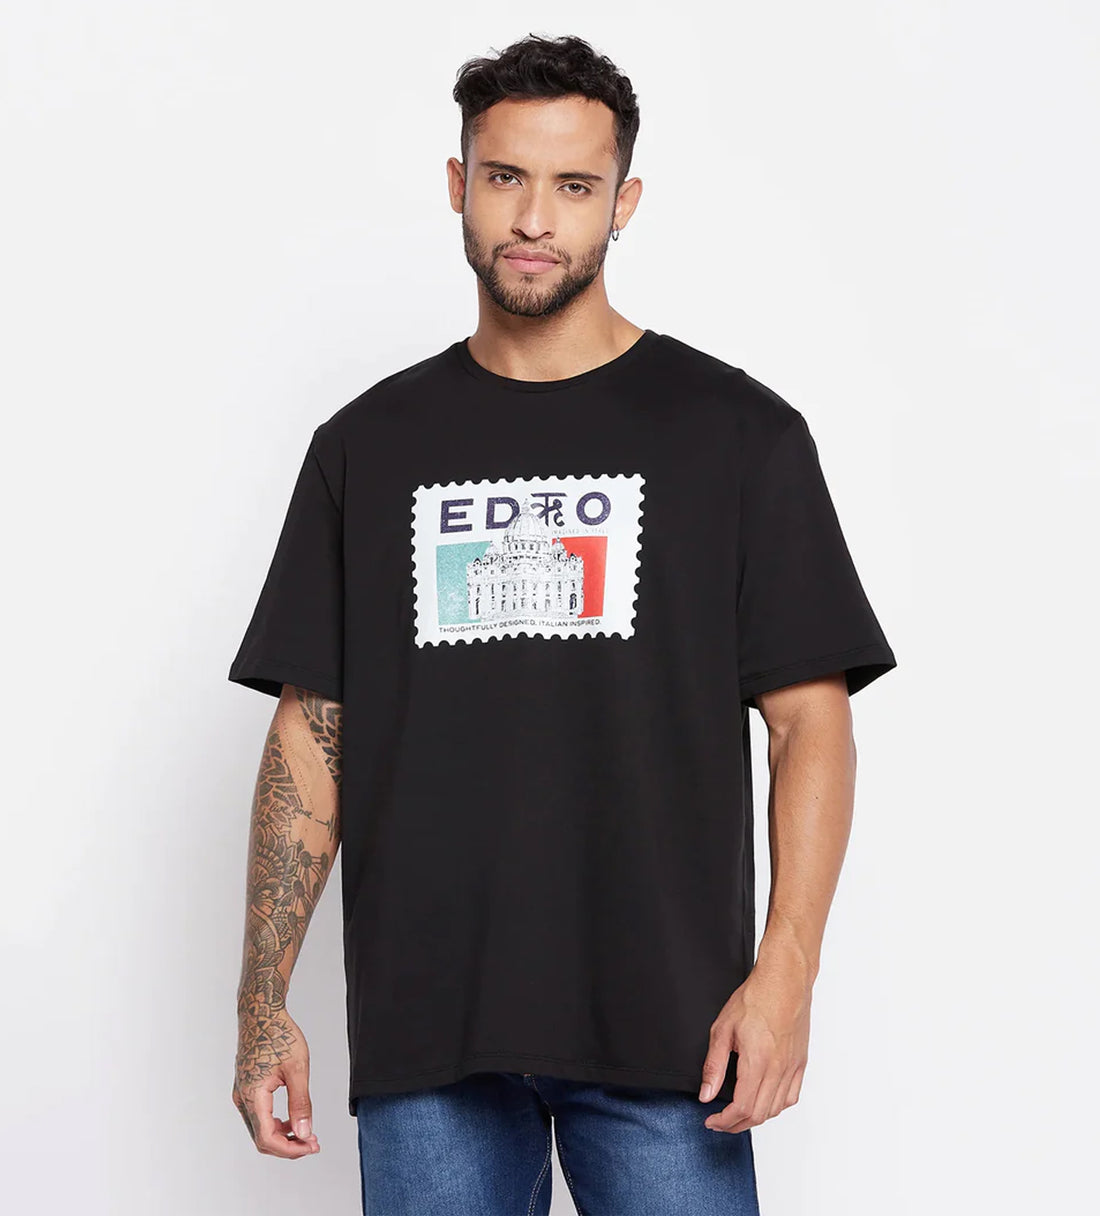 Printed Black Oversized T-Shirt for Men - EDRIO